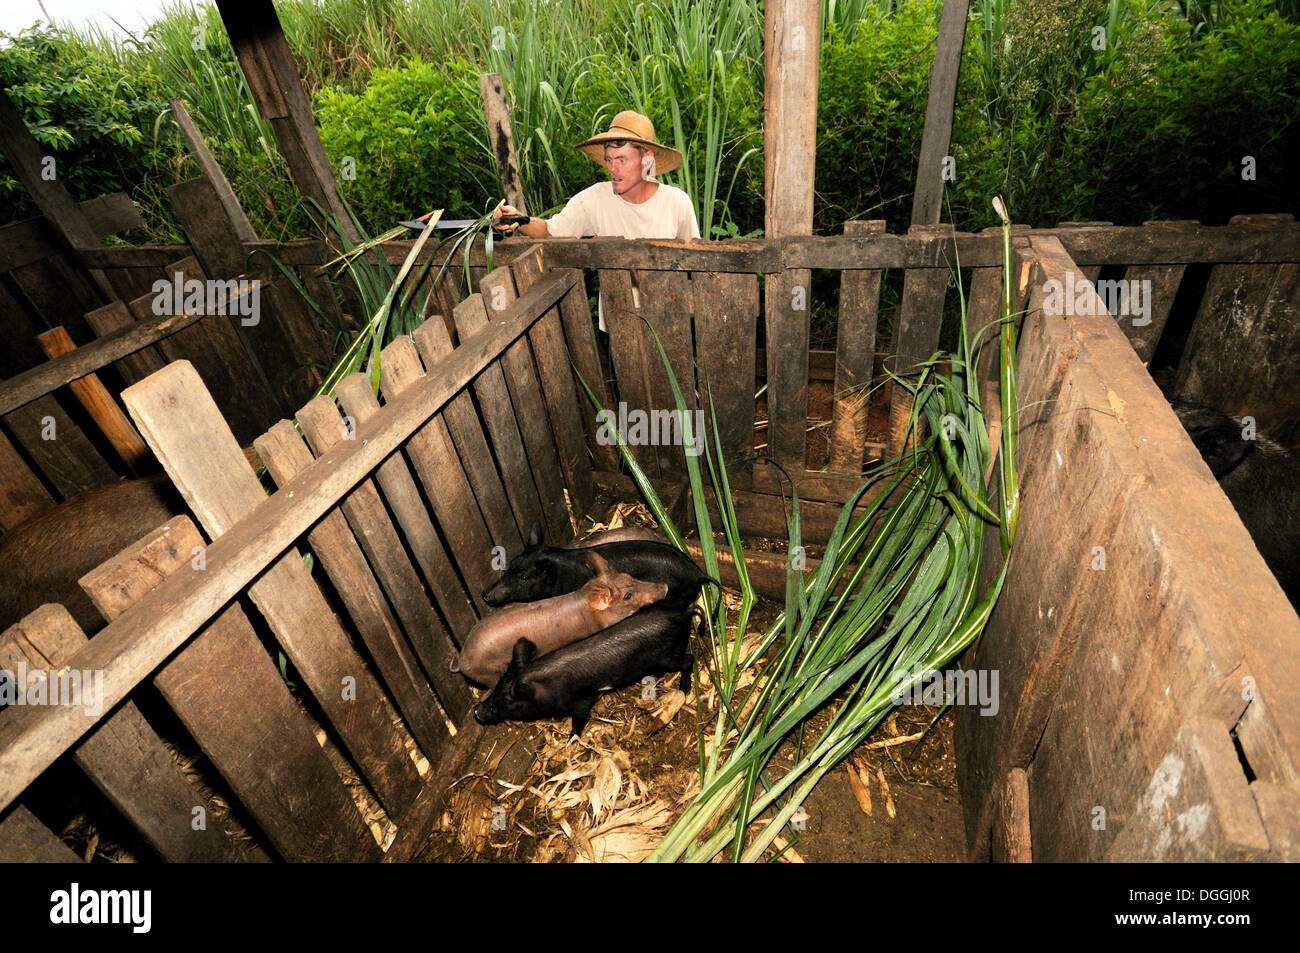 Farmer, die Fütterung von Schweinen mit Zuckerrohr, kleinbäuerliche Landwirtschaft in einer ehemaligen Siedlung der landlosen Bauern, Bodenreform Stockfoto